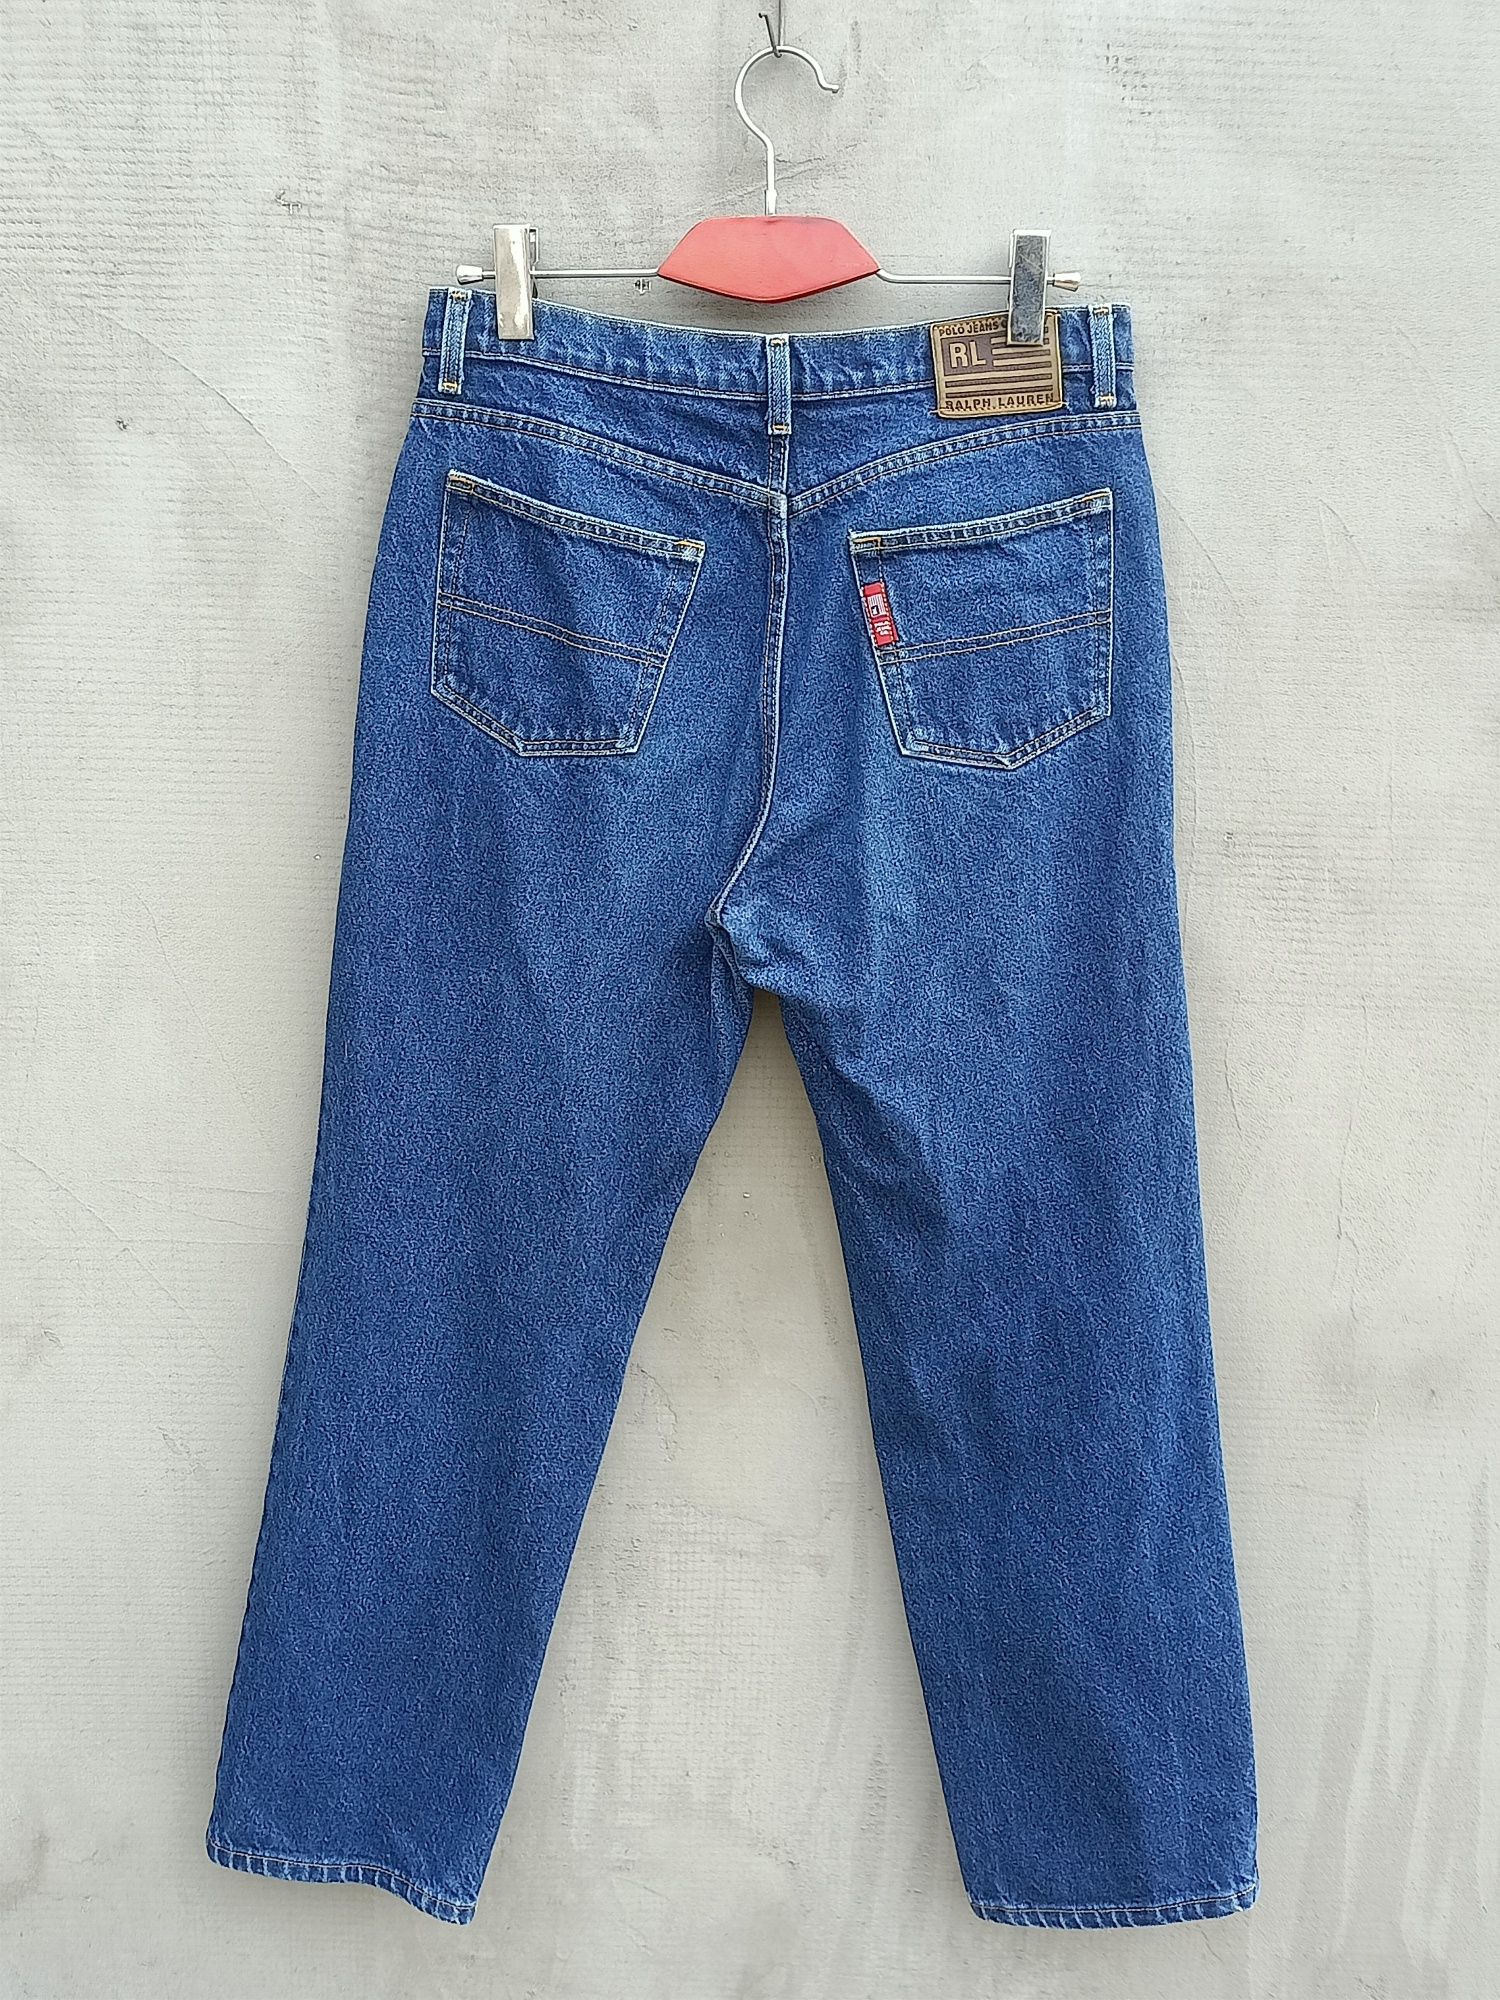 Ralph Lauren jeans USA